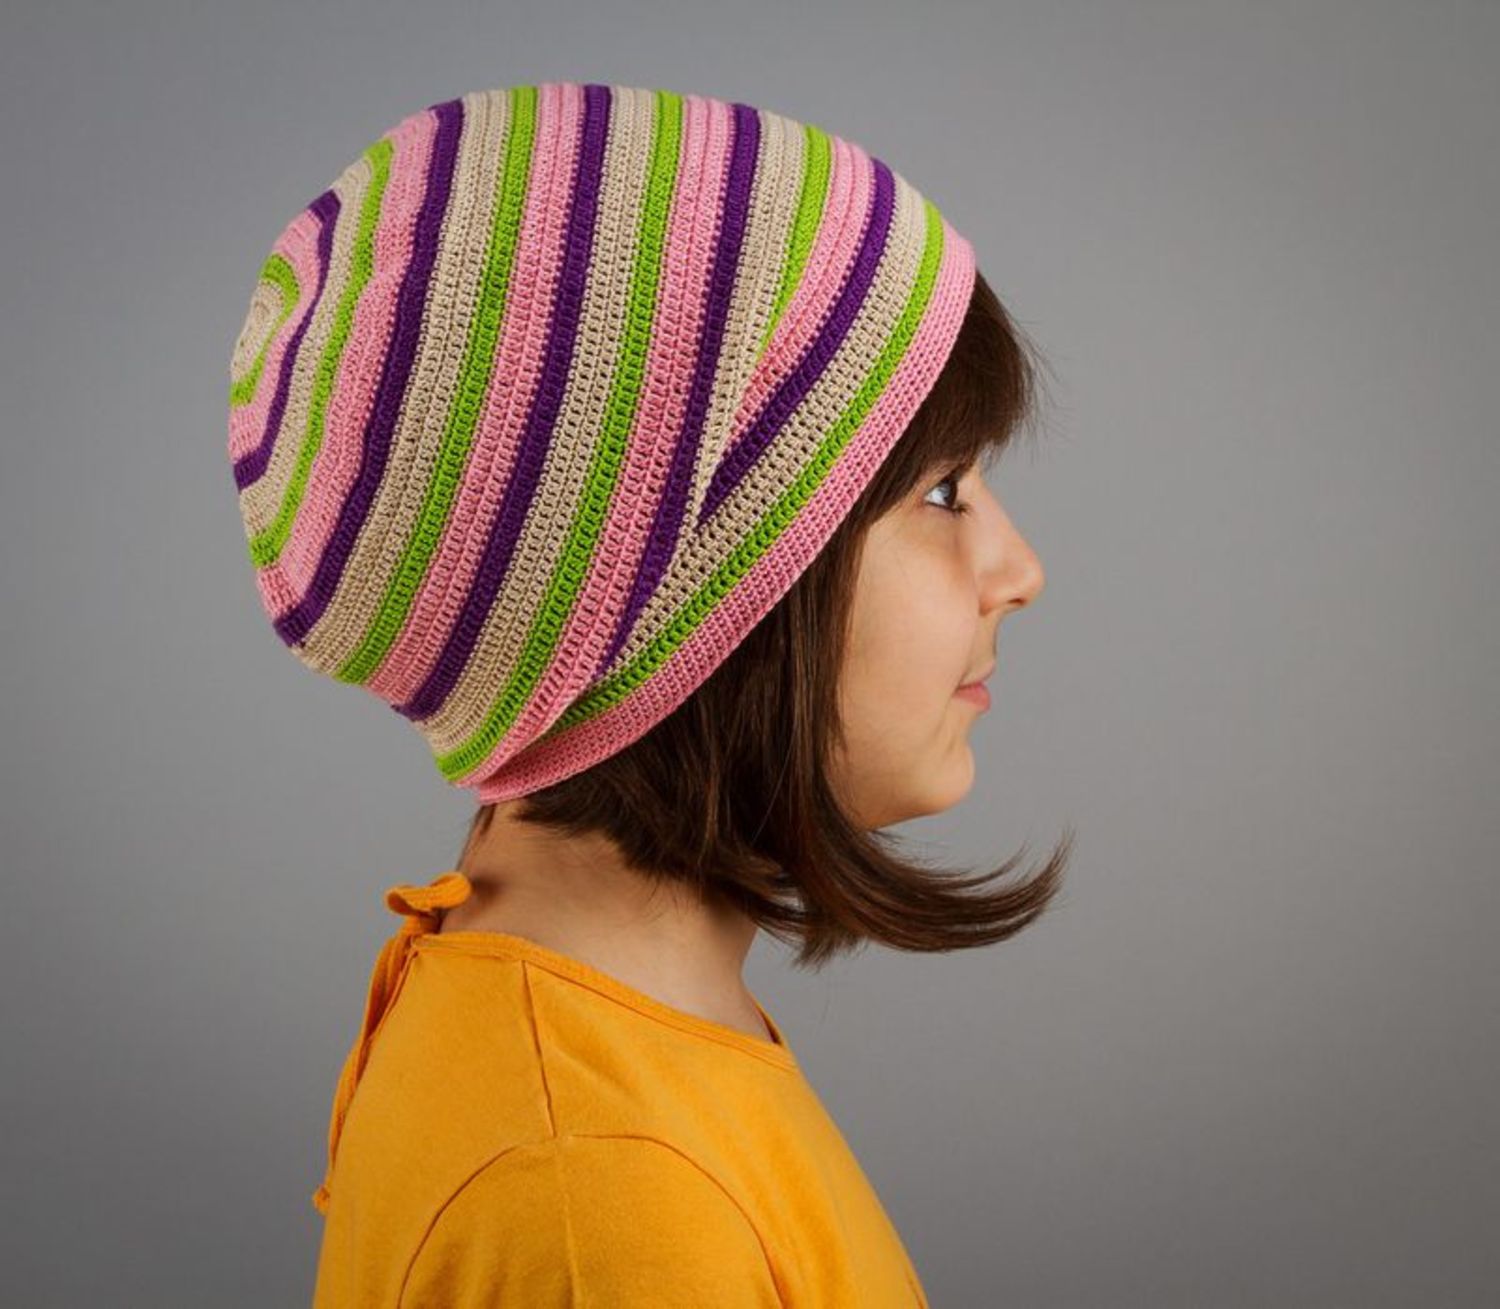 Demi-season children's hat photo 2